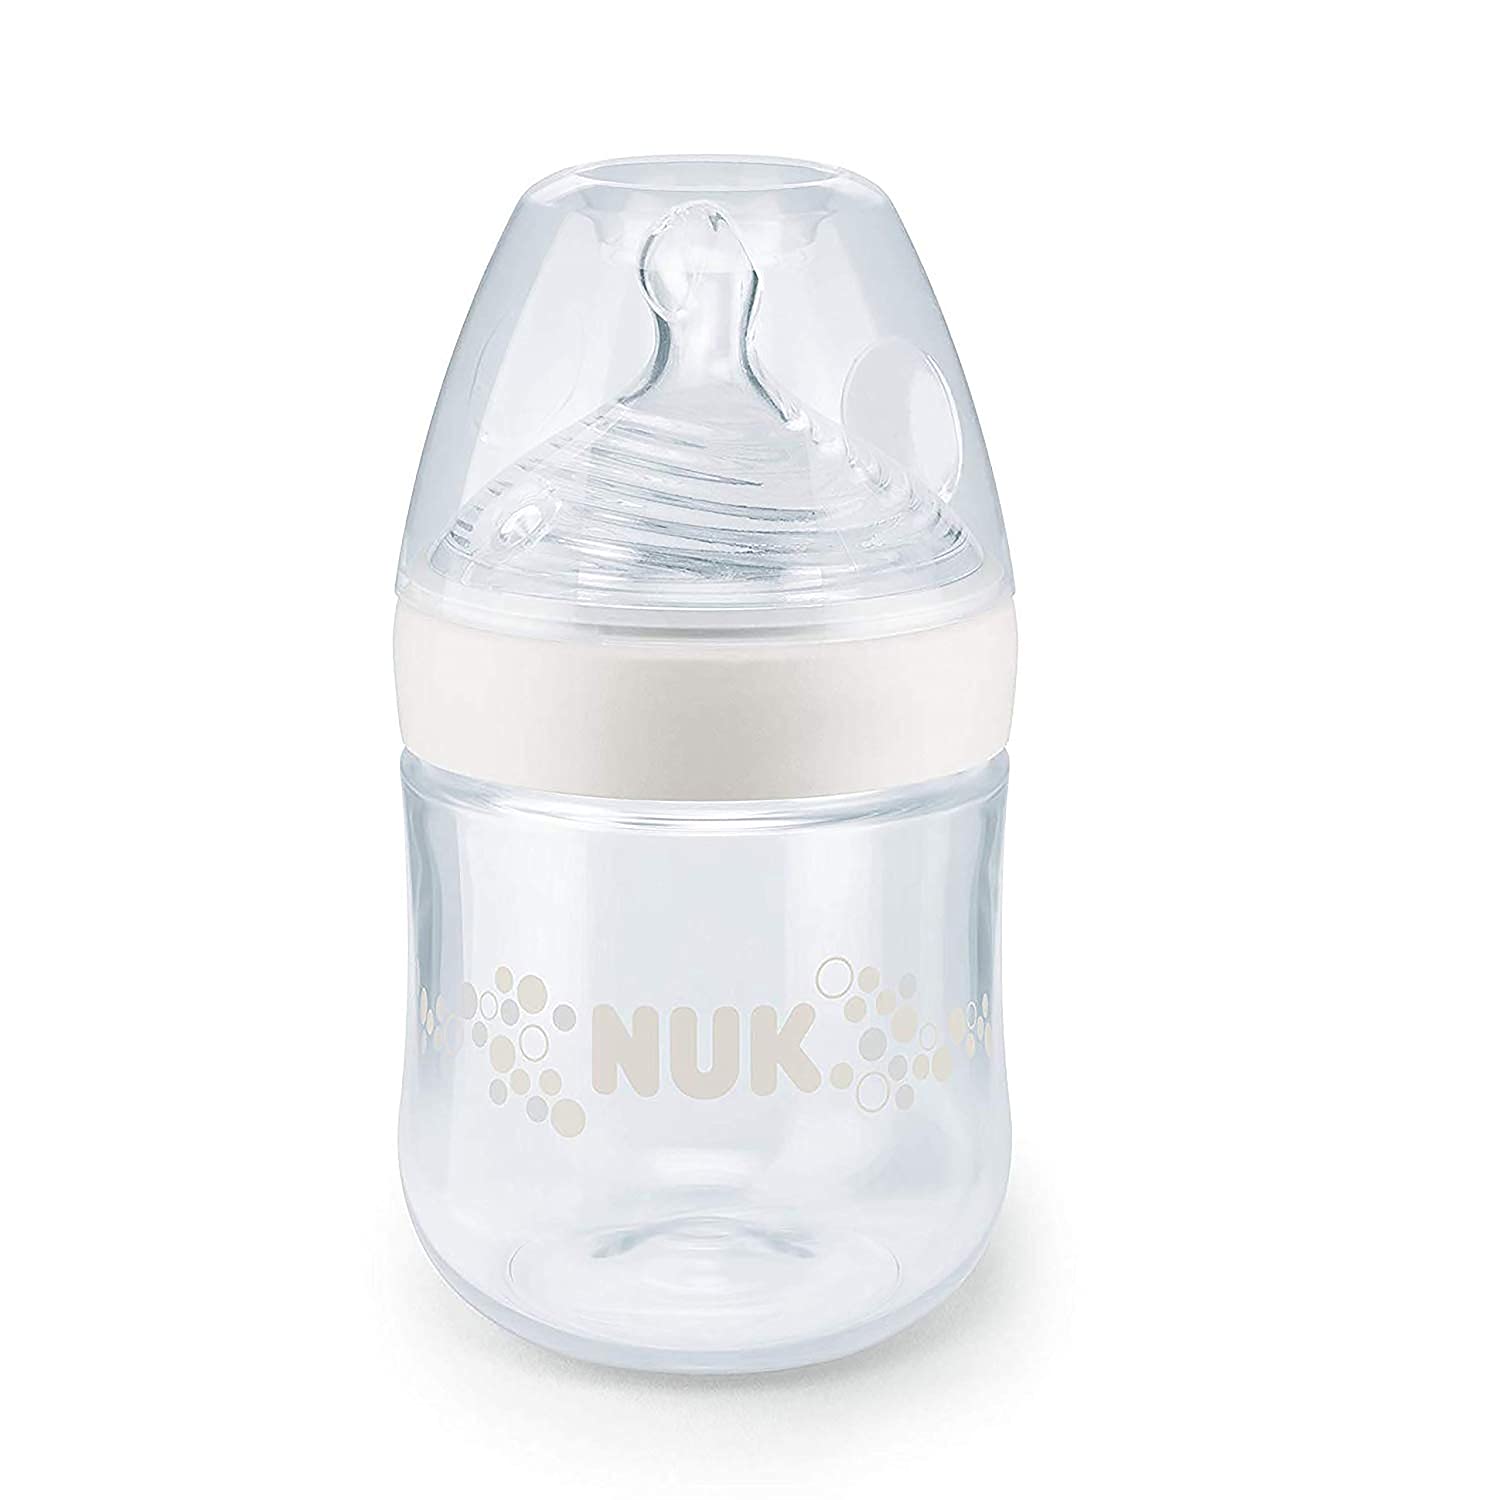 NUK Nature Sense baby bottle 6-18 months silicone teat, BPA-free, 150 ml